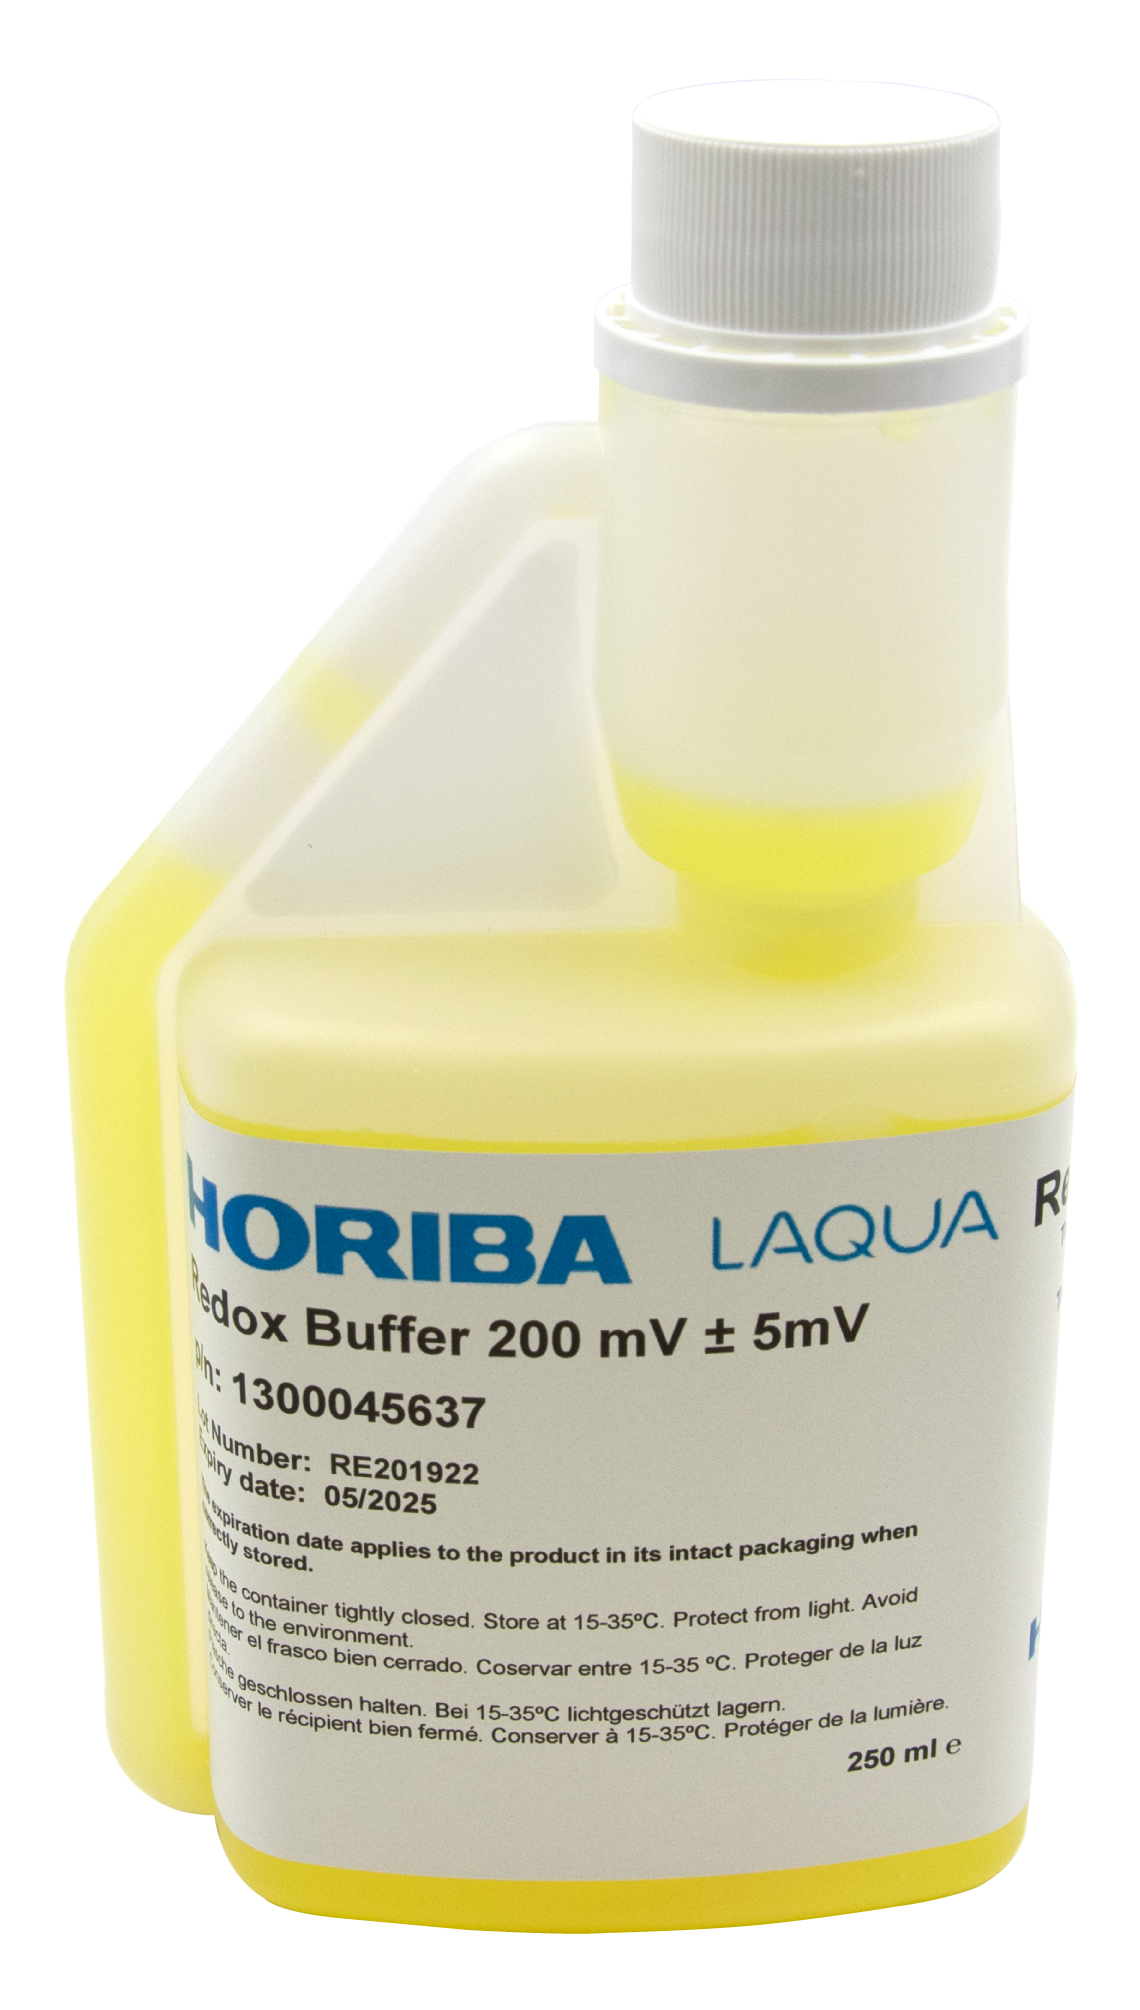 HORIBA ORP 475mV (±5mV @25°C) buffer solution 500ml (500-ORP-475)